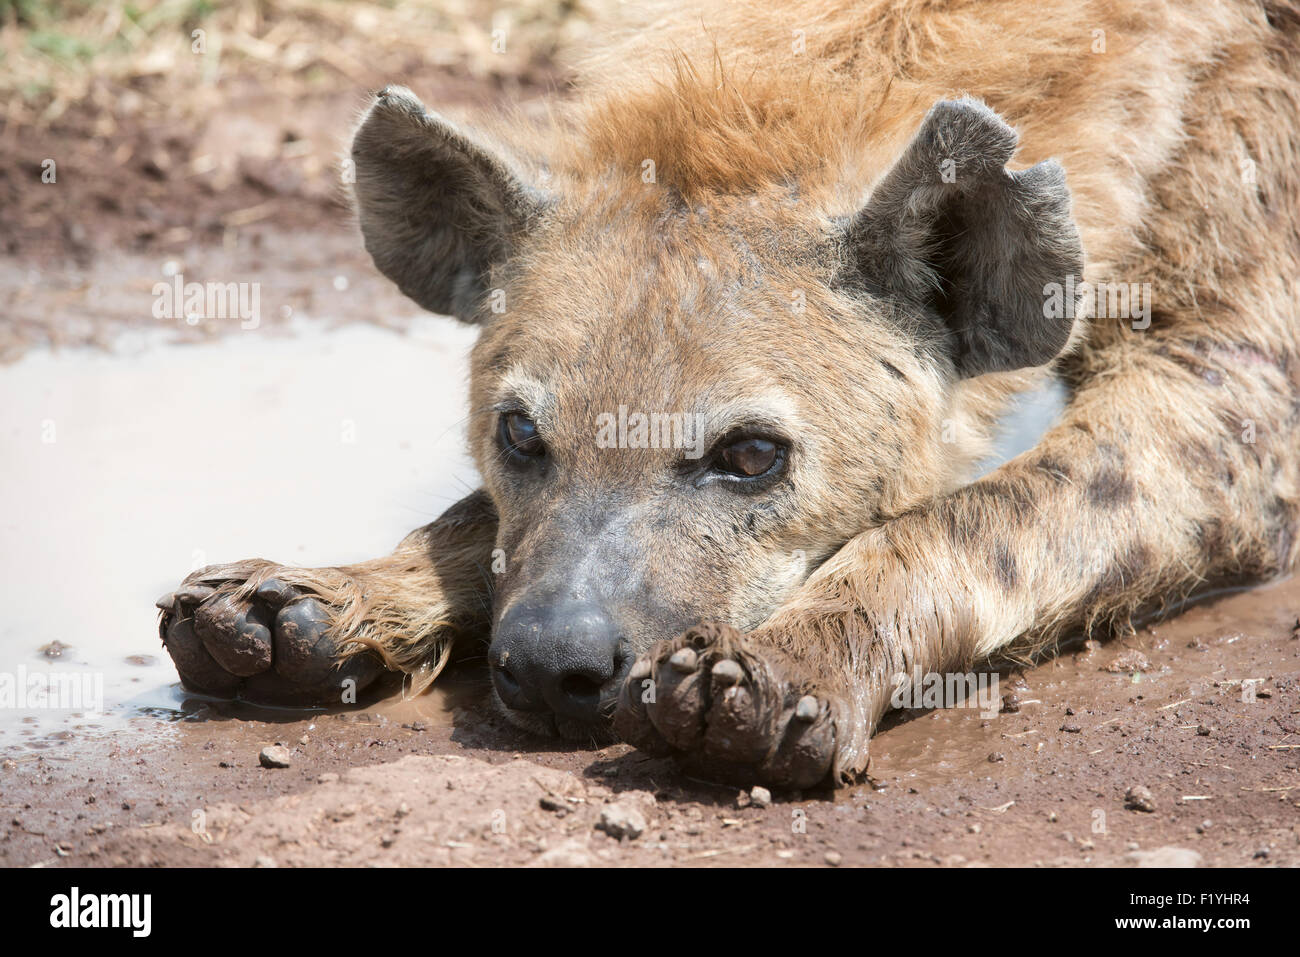 Portrait,Tanzania,Wildlife,Spotted Hyena Stock Photo - Alamy